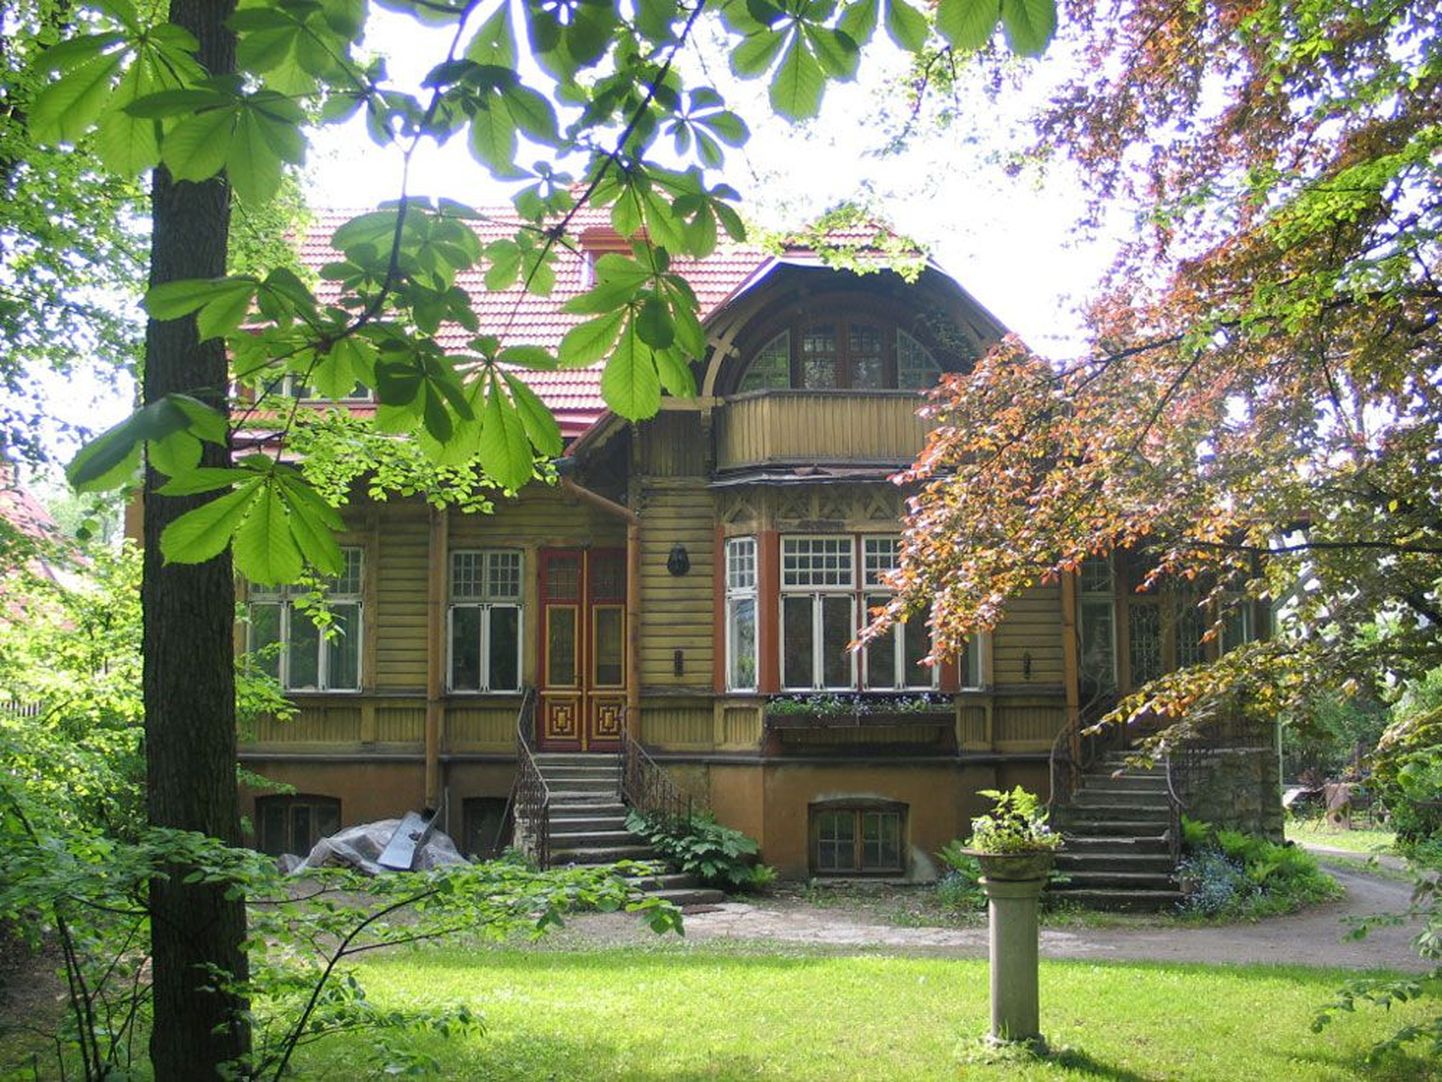 Kaunis juugendvilla: 
Kadriorgu 1905. aastal ehitatud 
hoone projekteeris arhitekt 
Otto Schott.